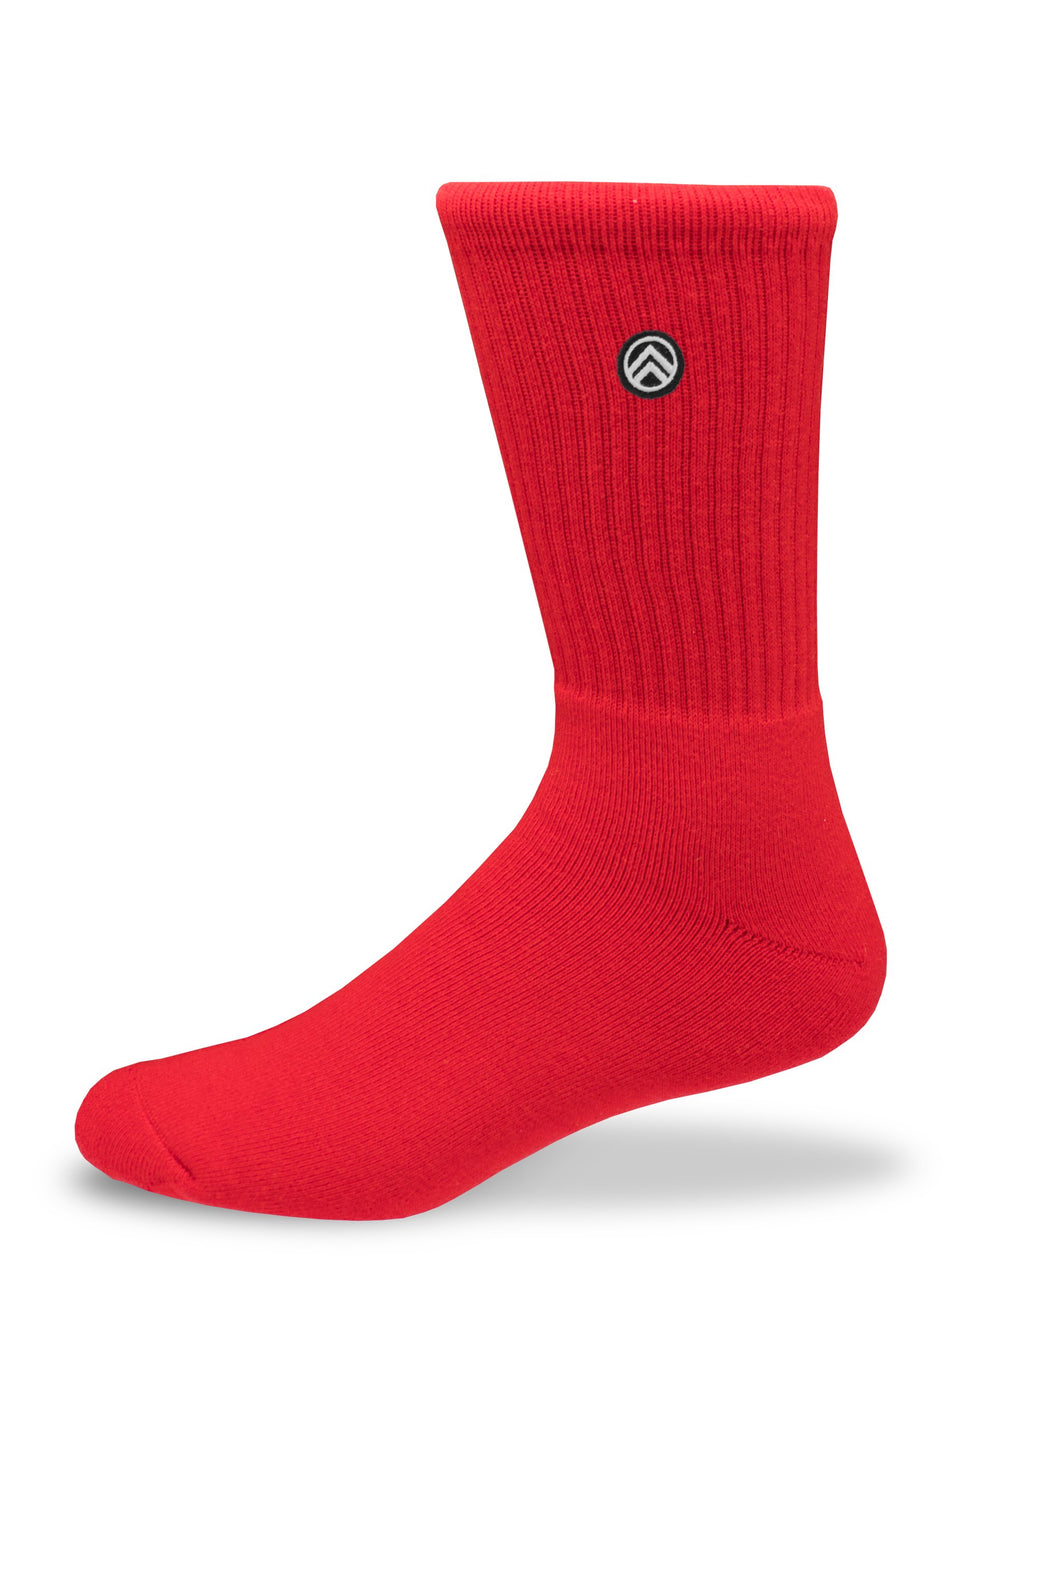 Sky Footwear Socks, Solid Red